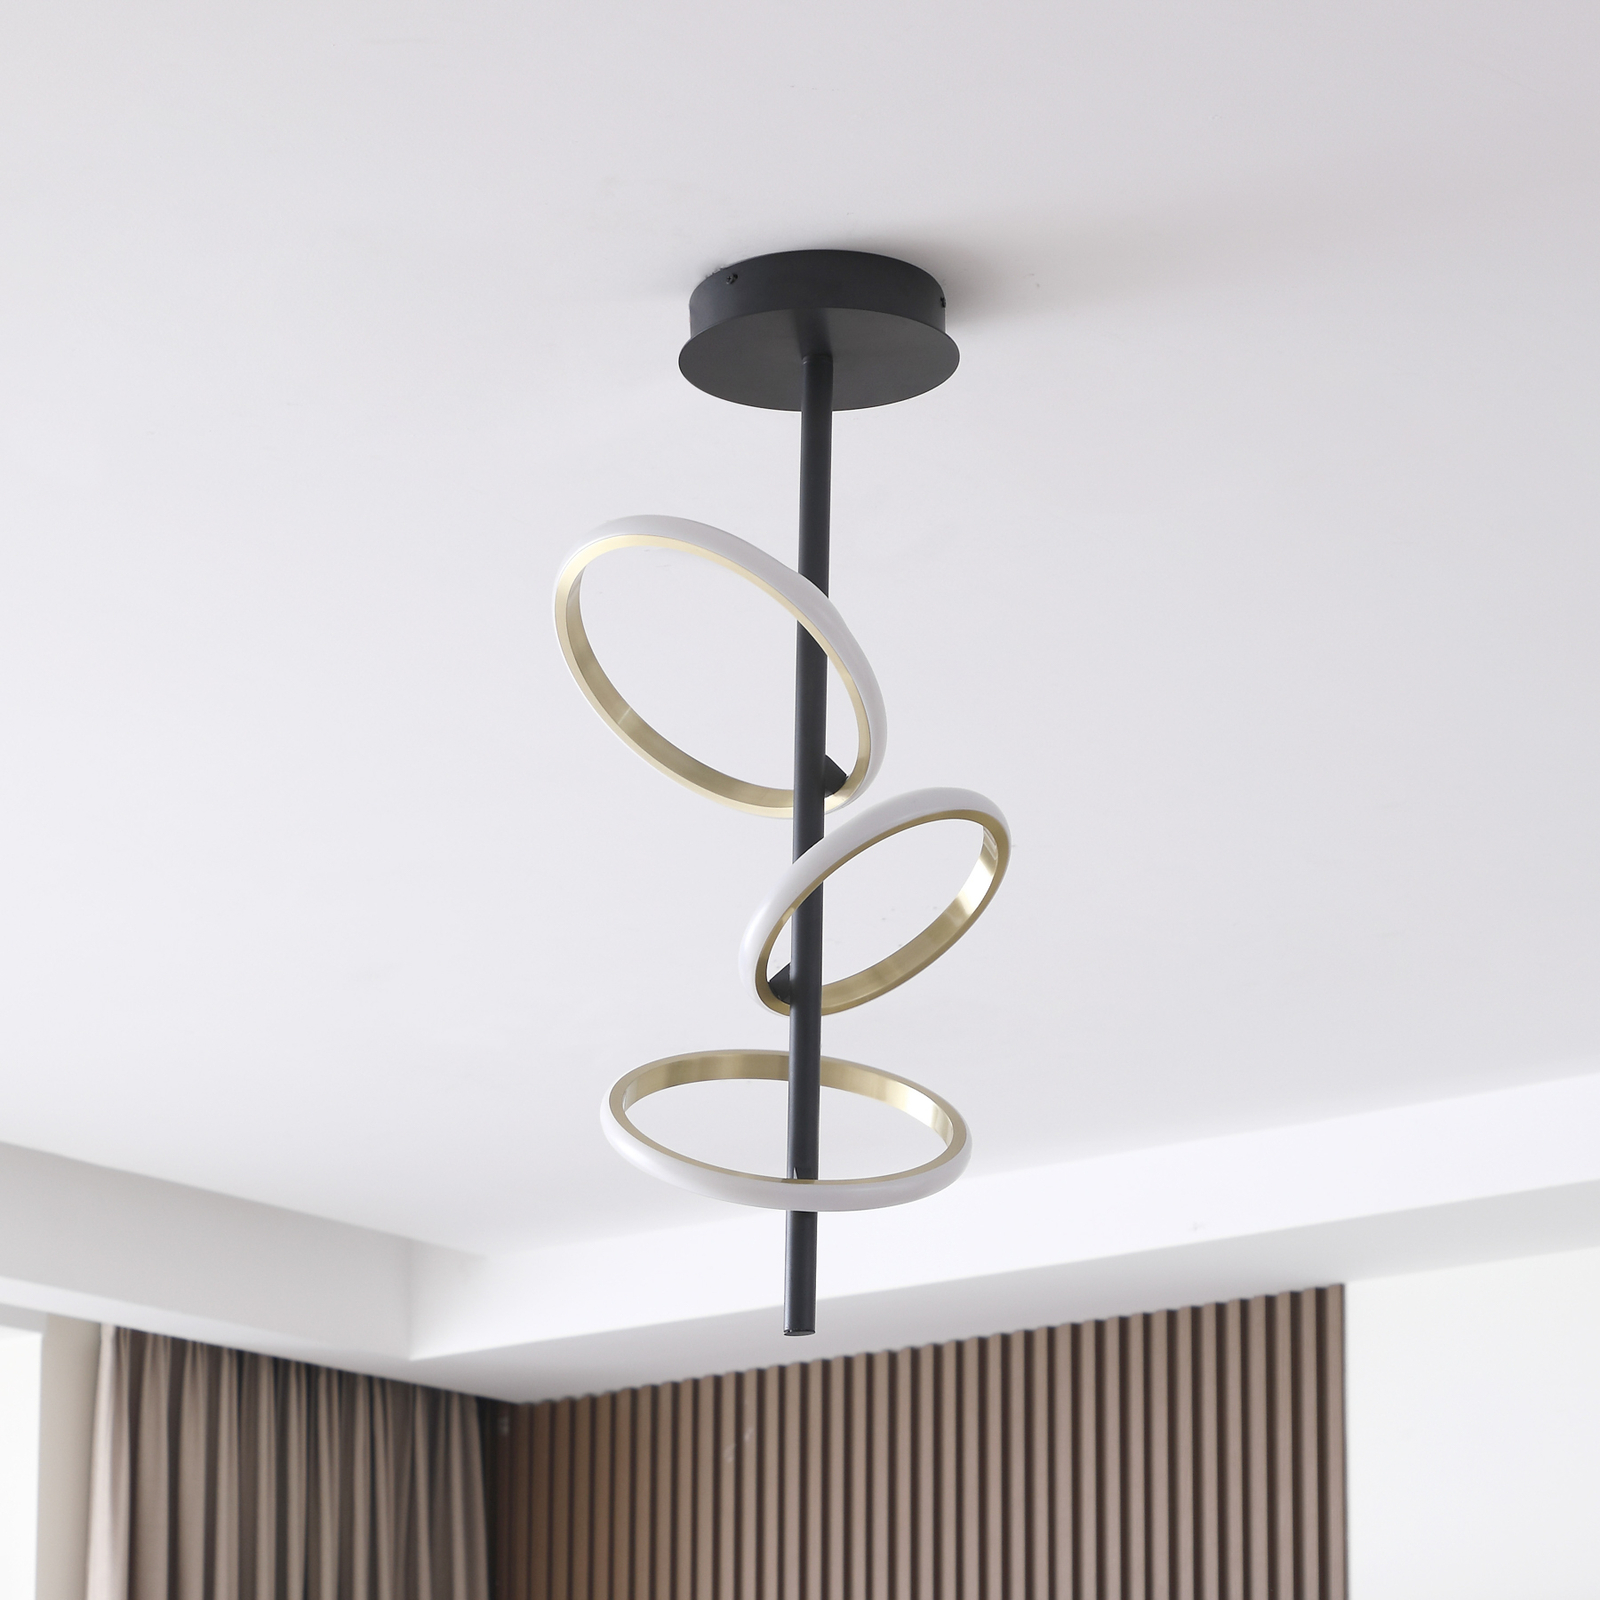 Lucande LED ceiling light Madu, black, metal, 75 cm high